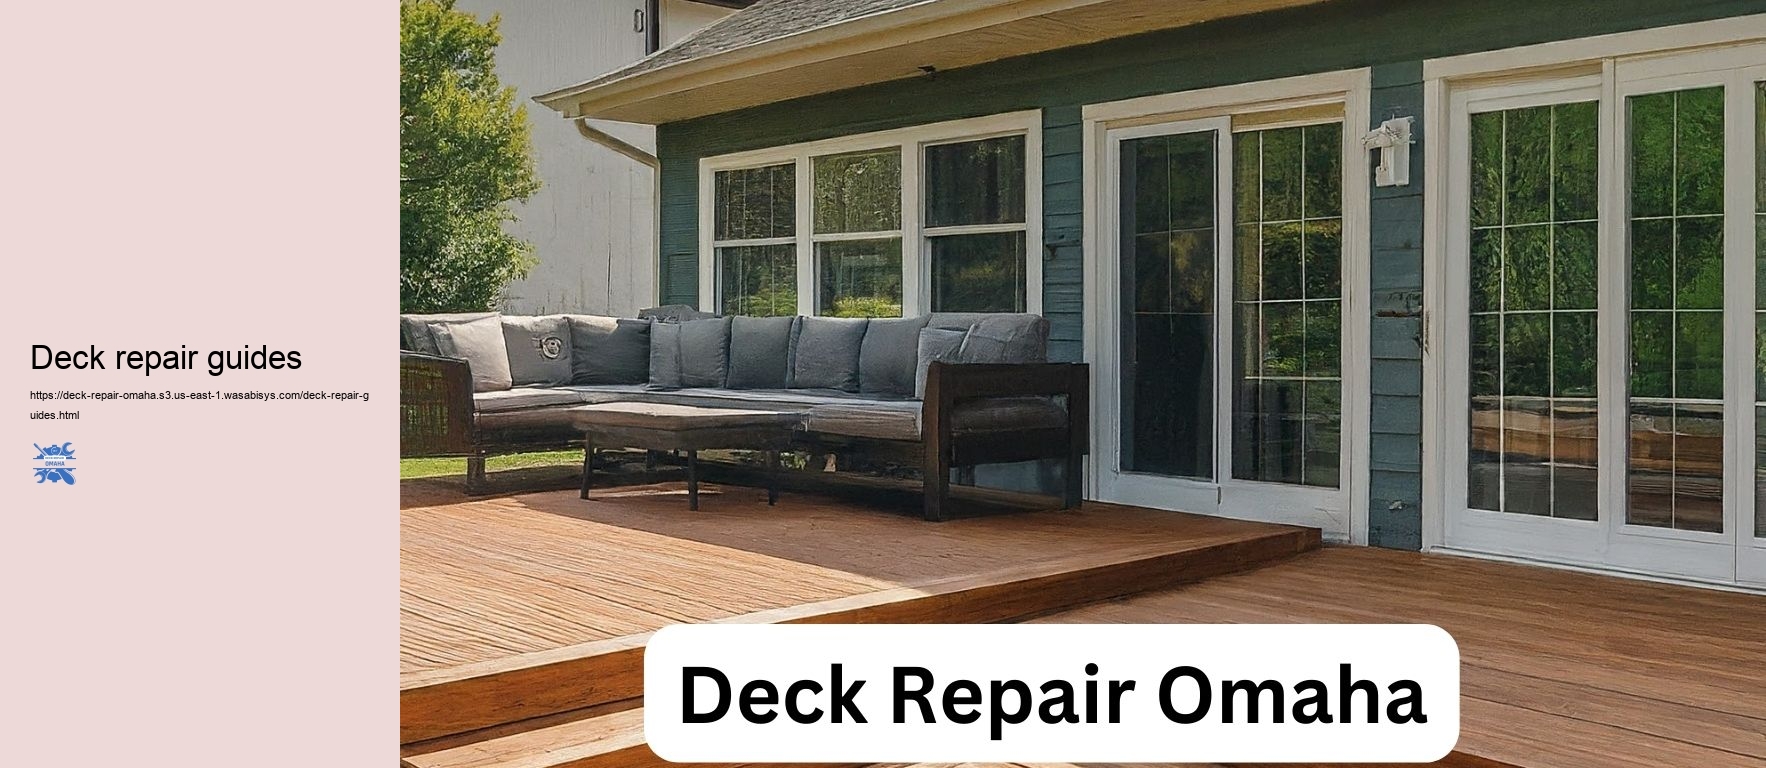 Deck repair guides